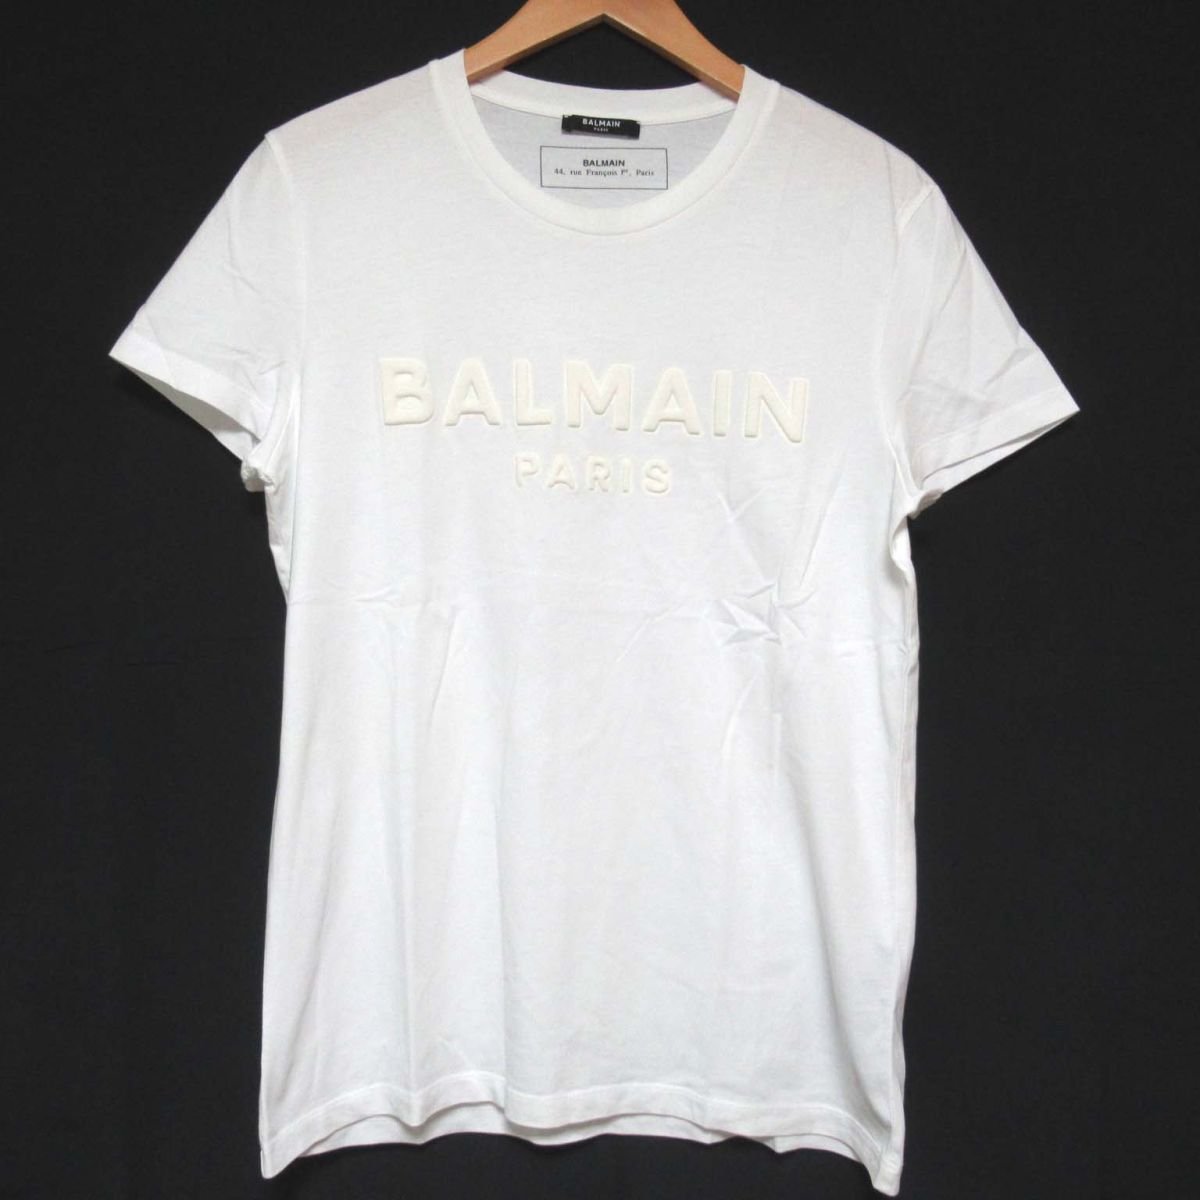 クリーニング済 美品 BALMAIN バルマンオム 3D LOGO エンボスロゴ クルーネック 半袖 Tシャツ カットソー Sサイズ ホワイト